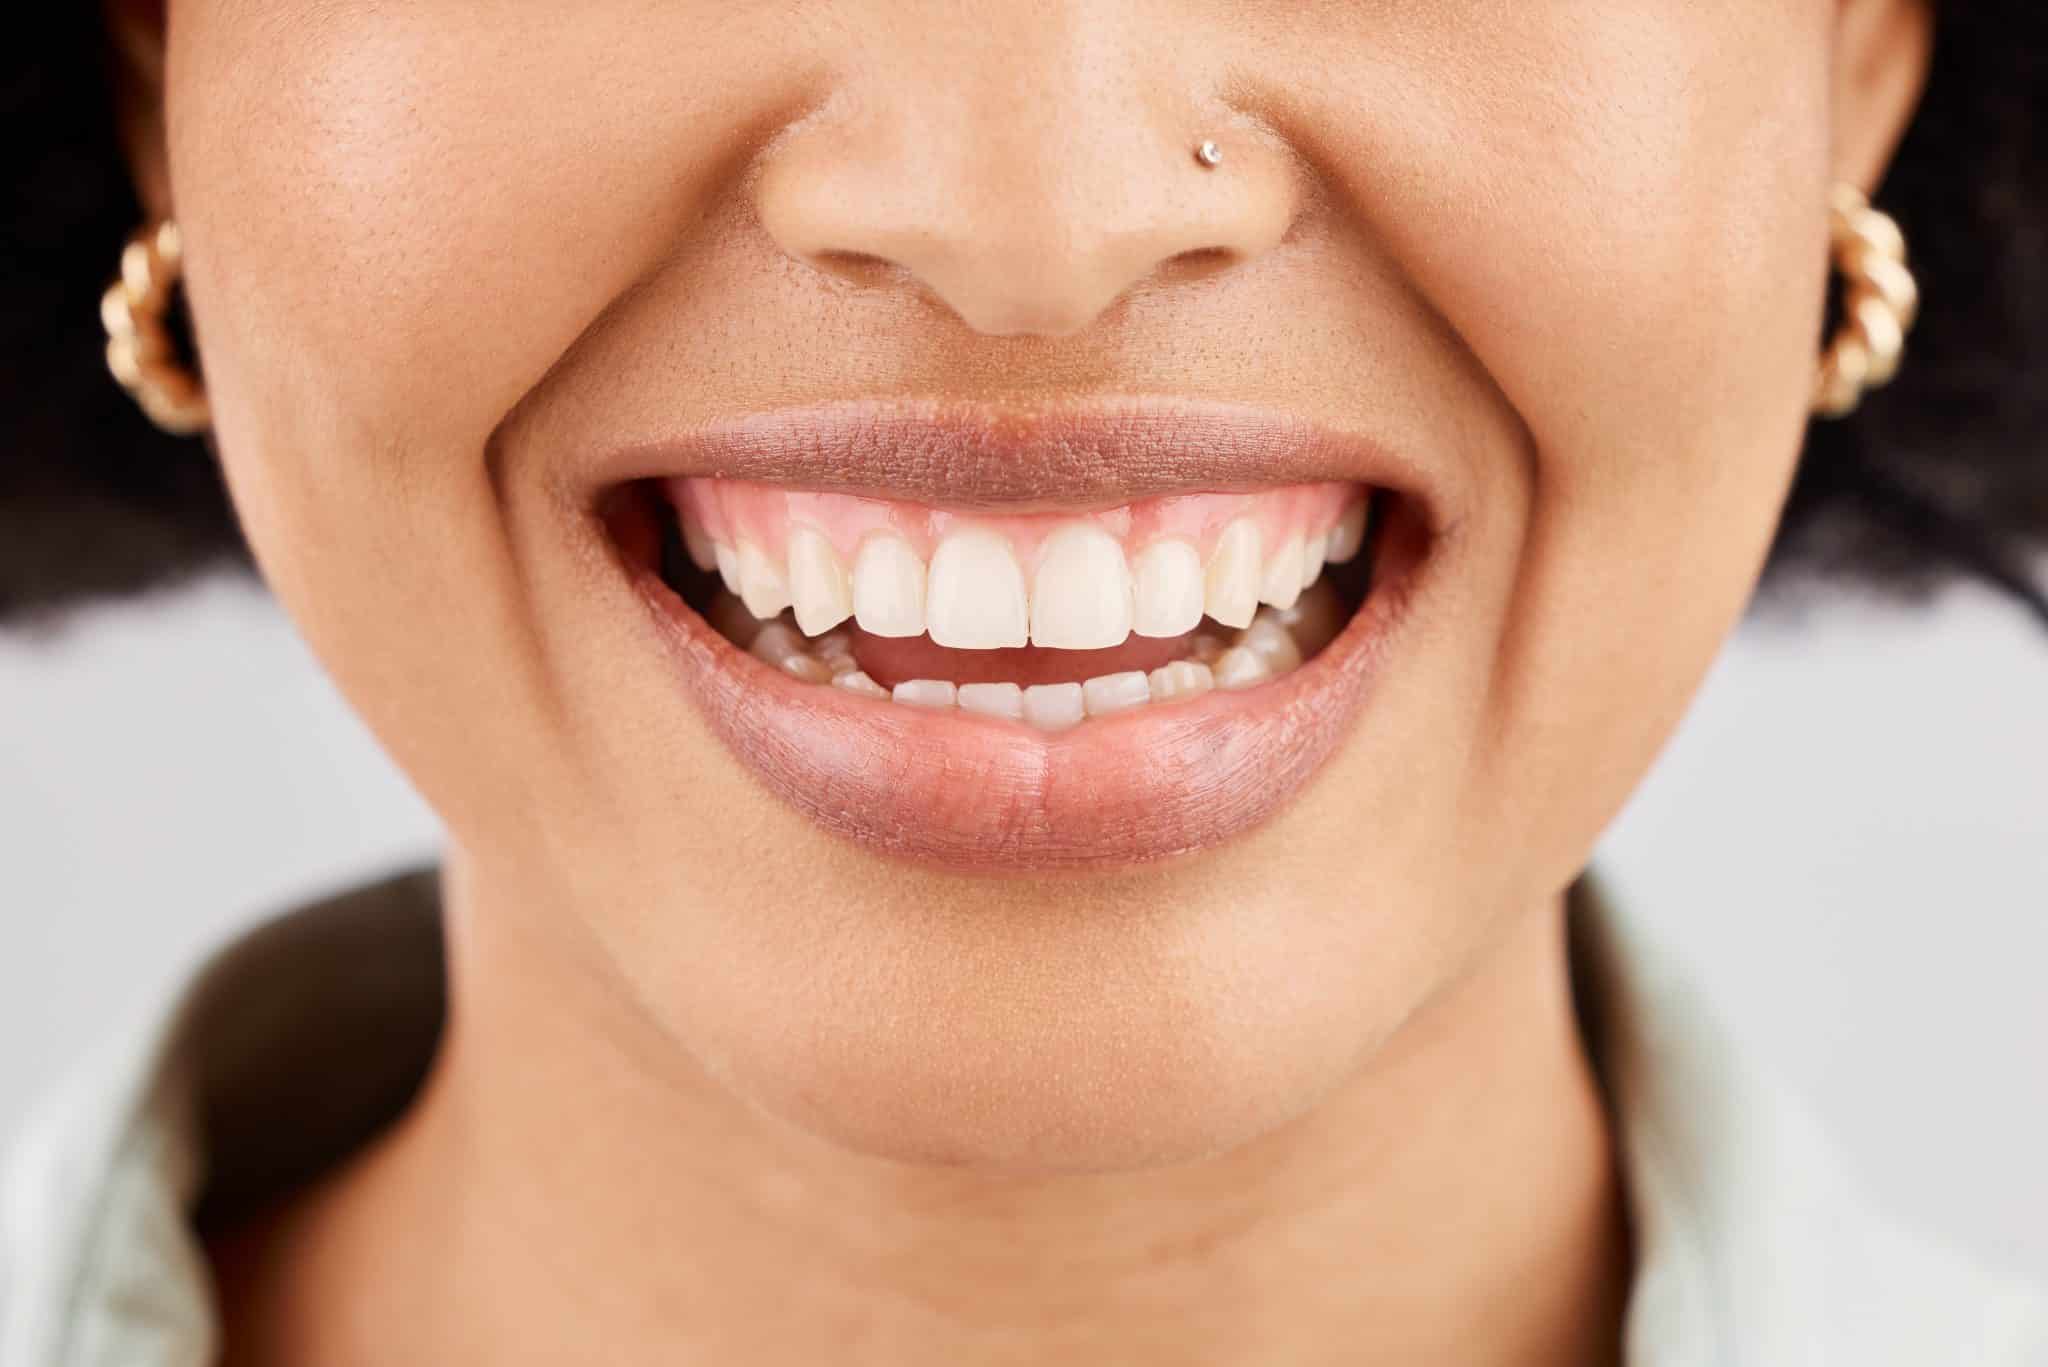 Das Bild zeigt Nase und Mund einer jungen Frau mit strahlendem Lächeln und gesundem Zahnfleich.